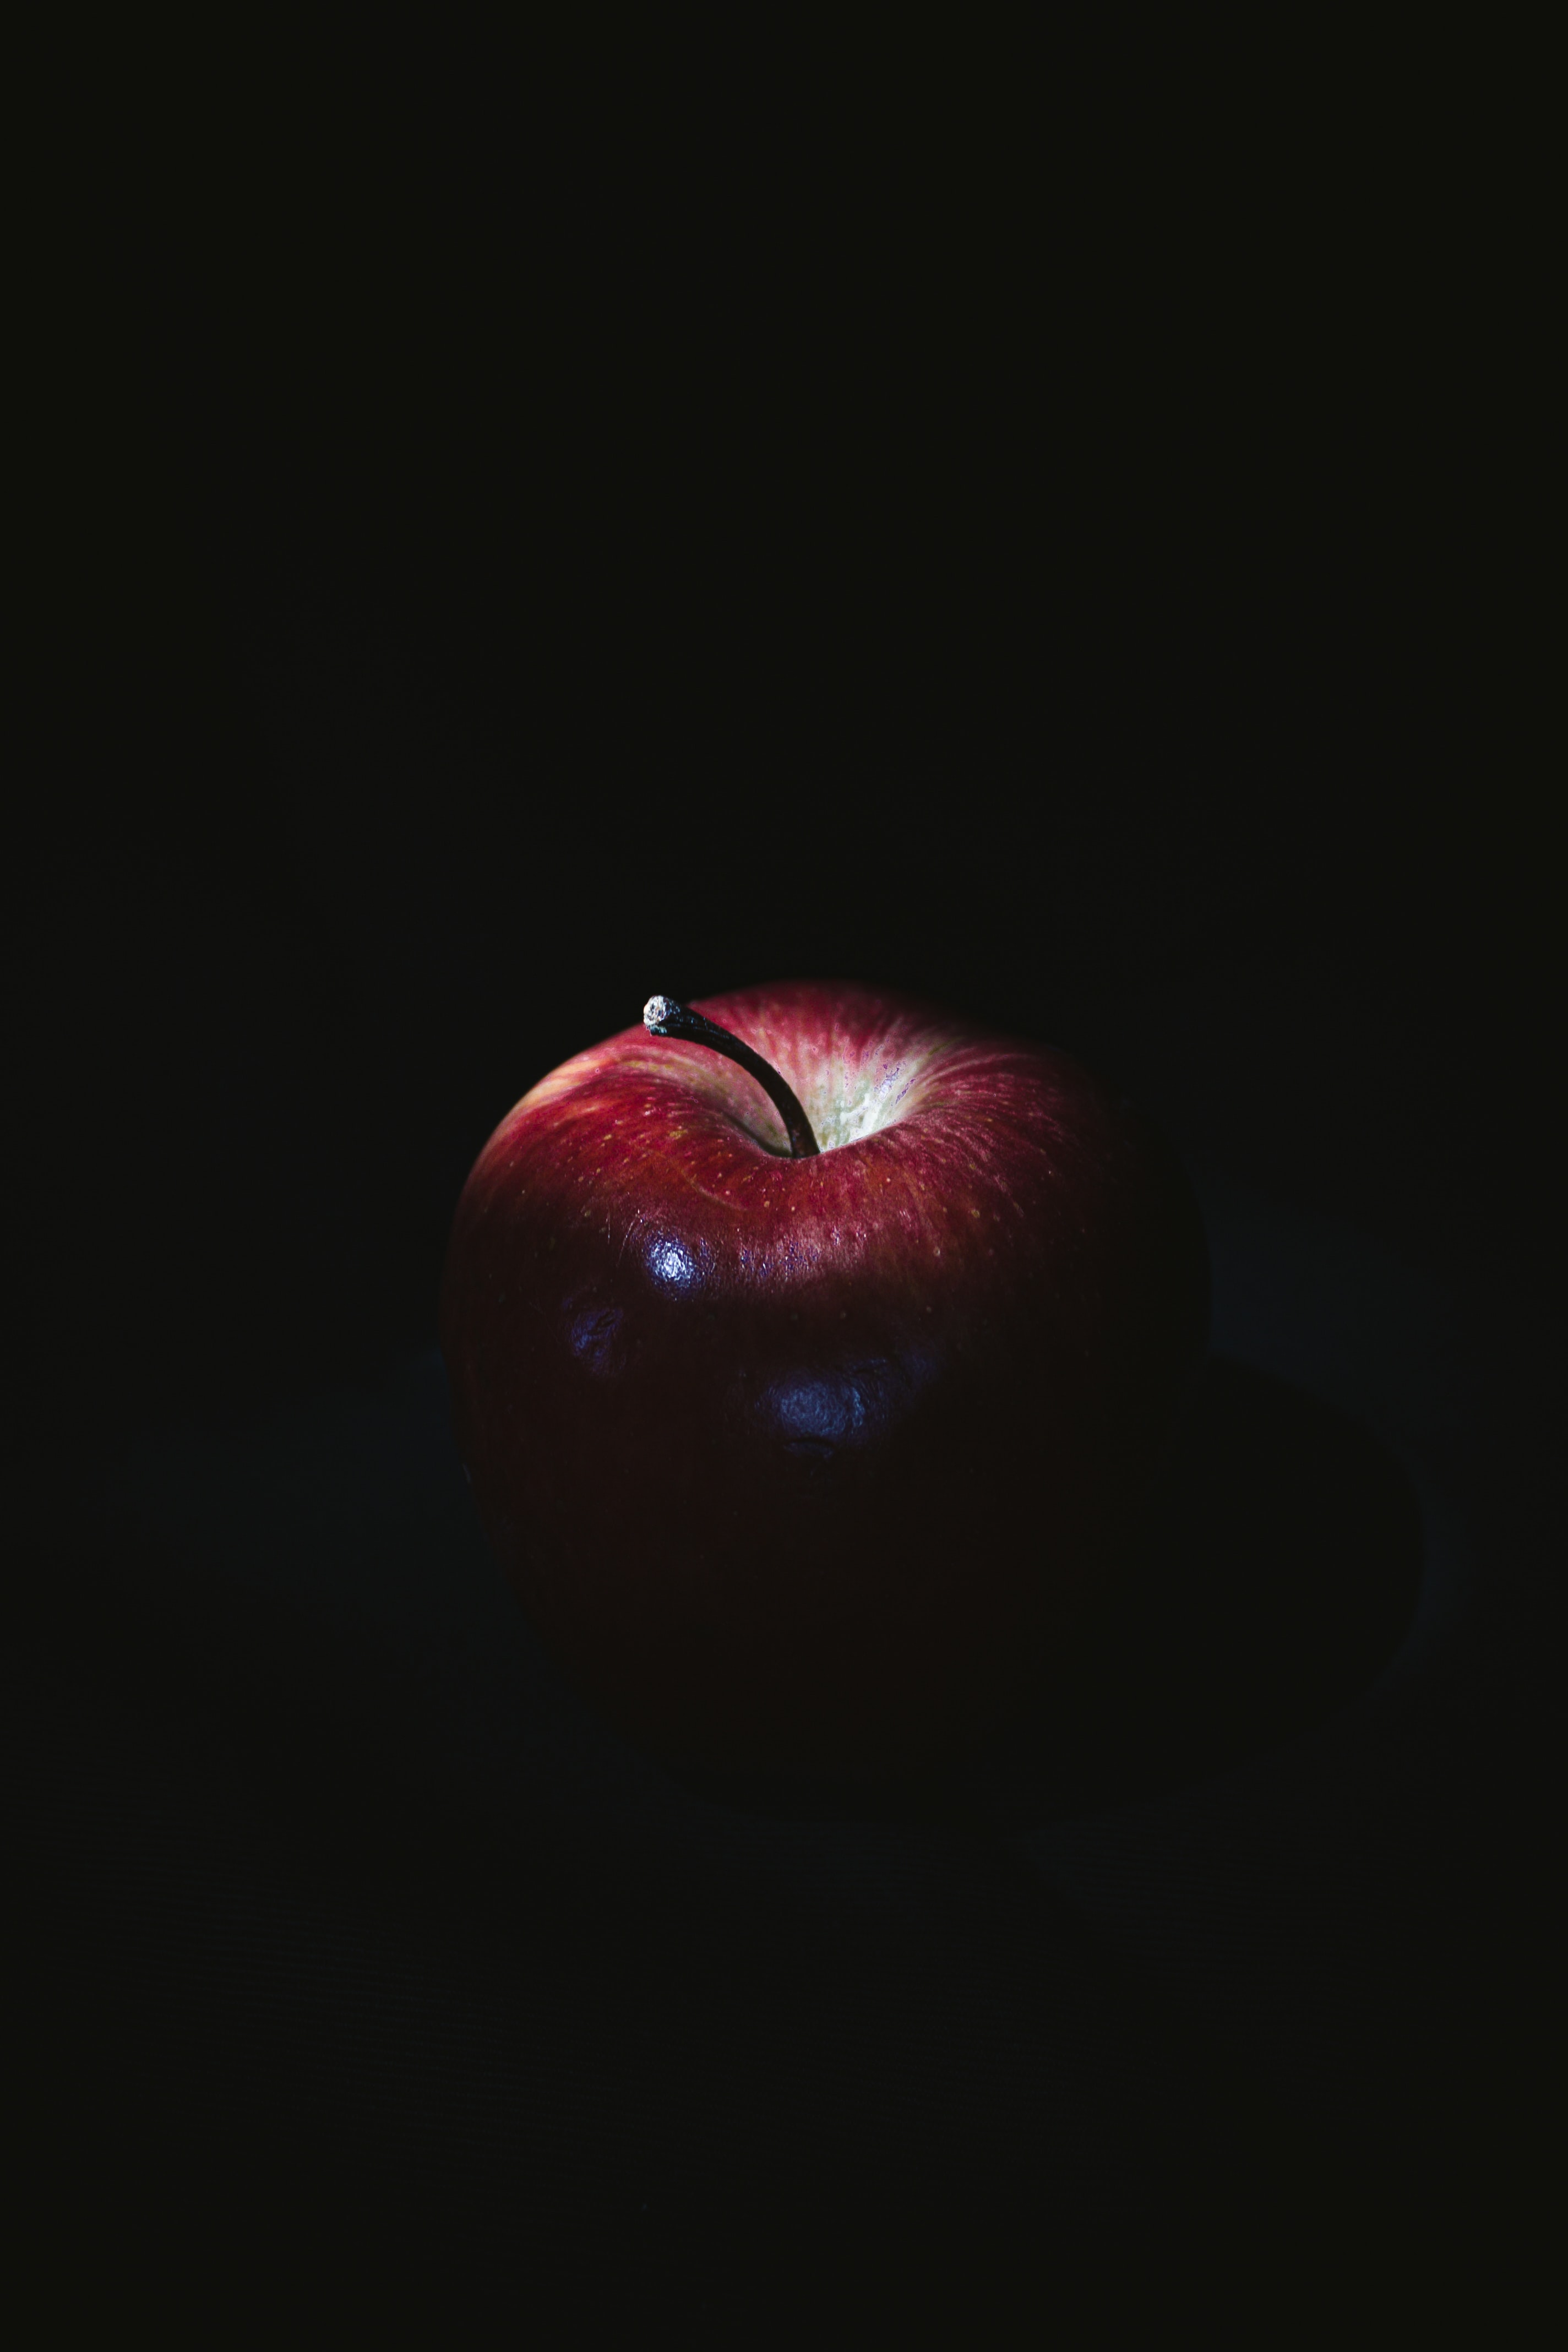 98382 免費下載壁紙 阴影, 水果, 食物, 苹果, 红色, 黑暗的, 黑暗, 红色的 屏保和圖片